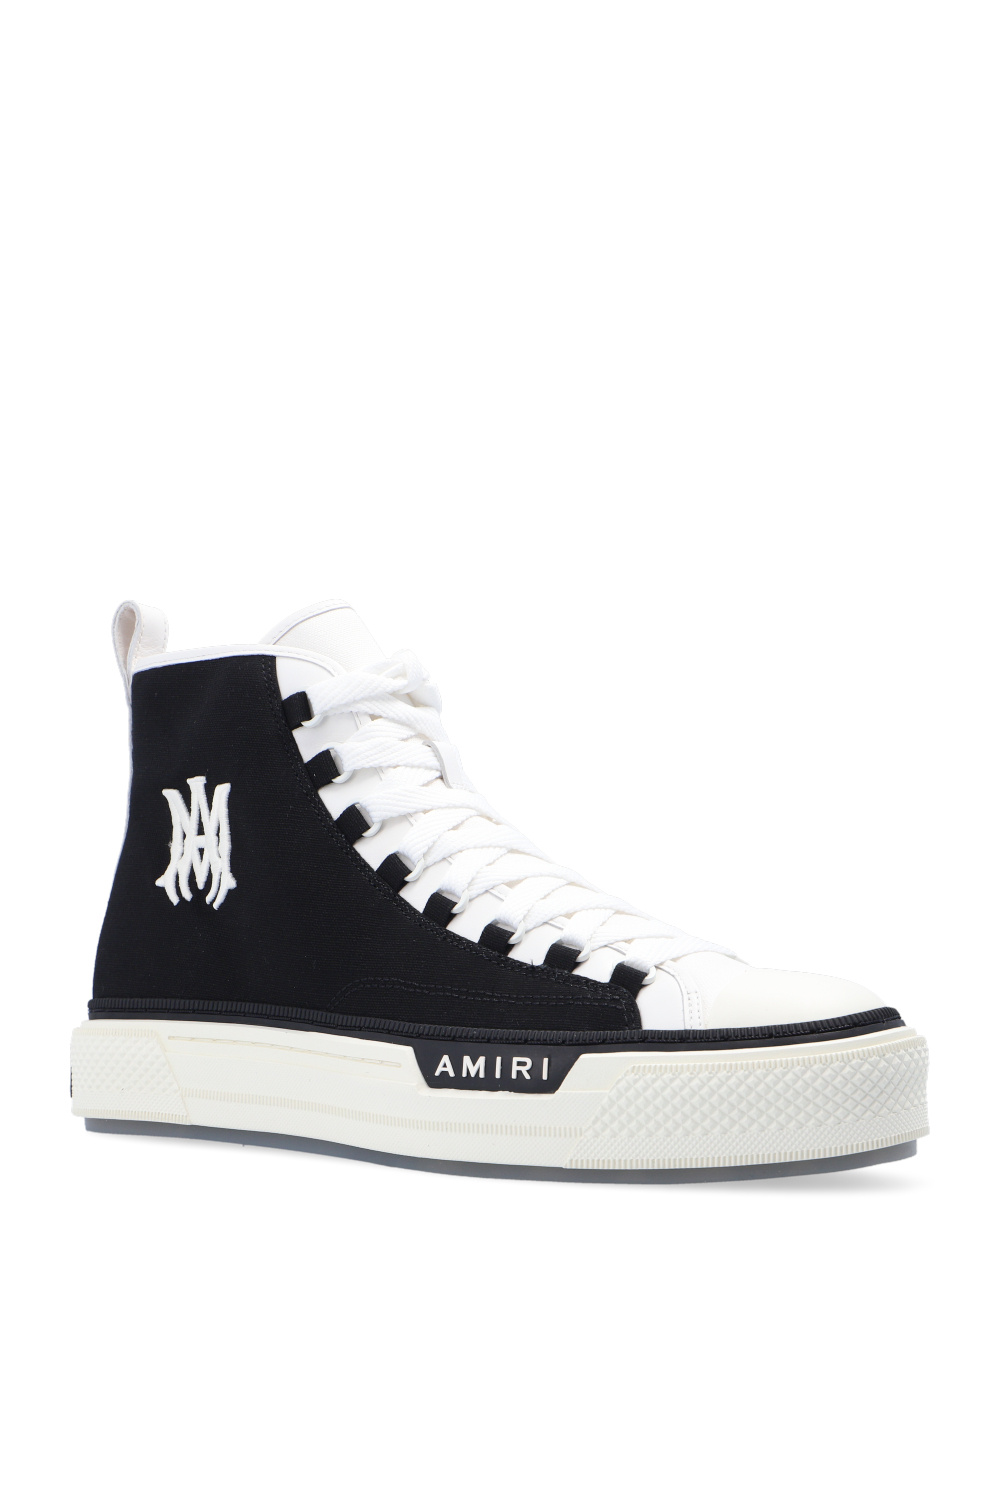 Amiri ‘Ma Court’ high-top sneakers